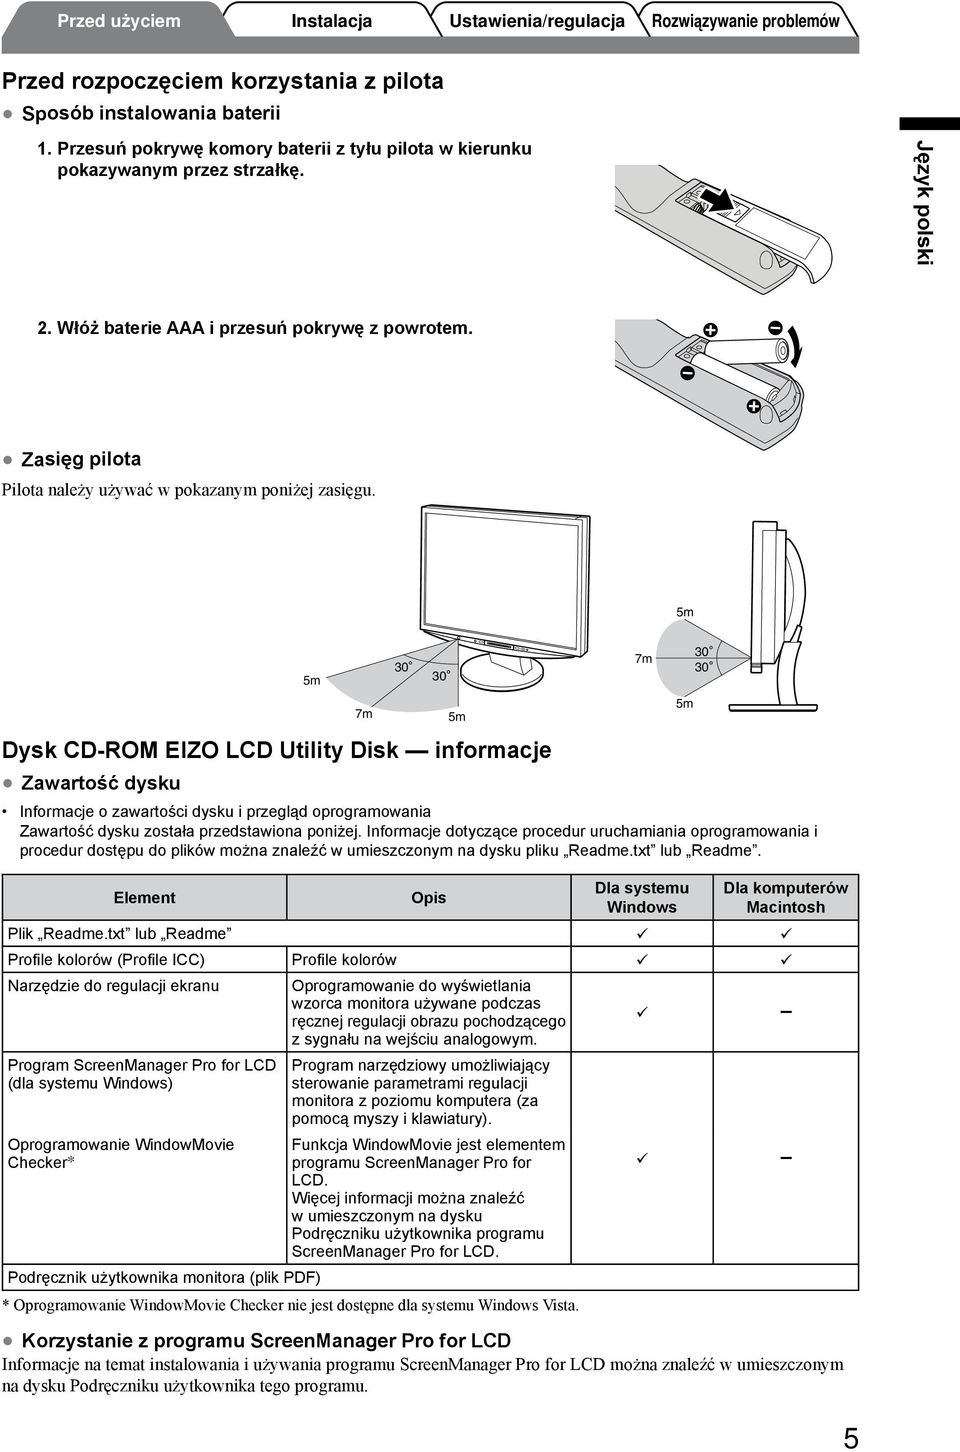 5m Dysk CD-ROM EIZO LCD Utility Disk informacje Zawartość dysku 5m 7m 30 Informacje o zawartości dysku i przegląd oprogramowania Zawartość dysku została przedstawiona poniżej.